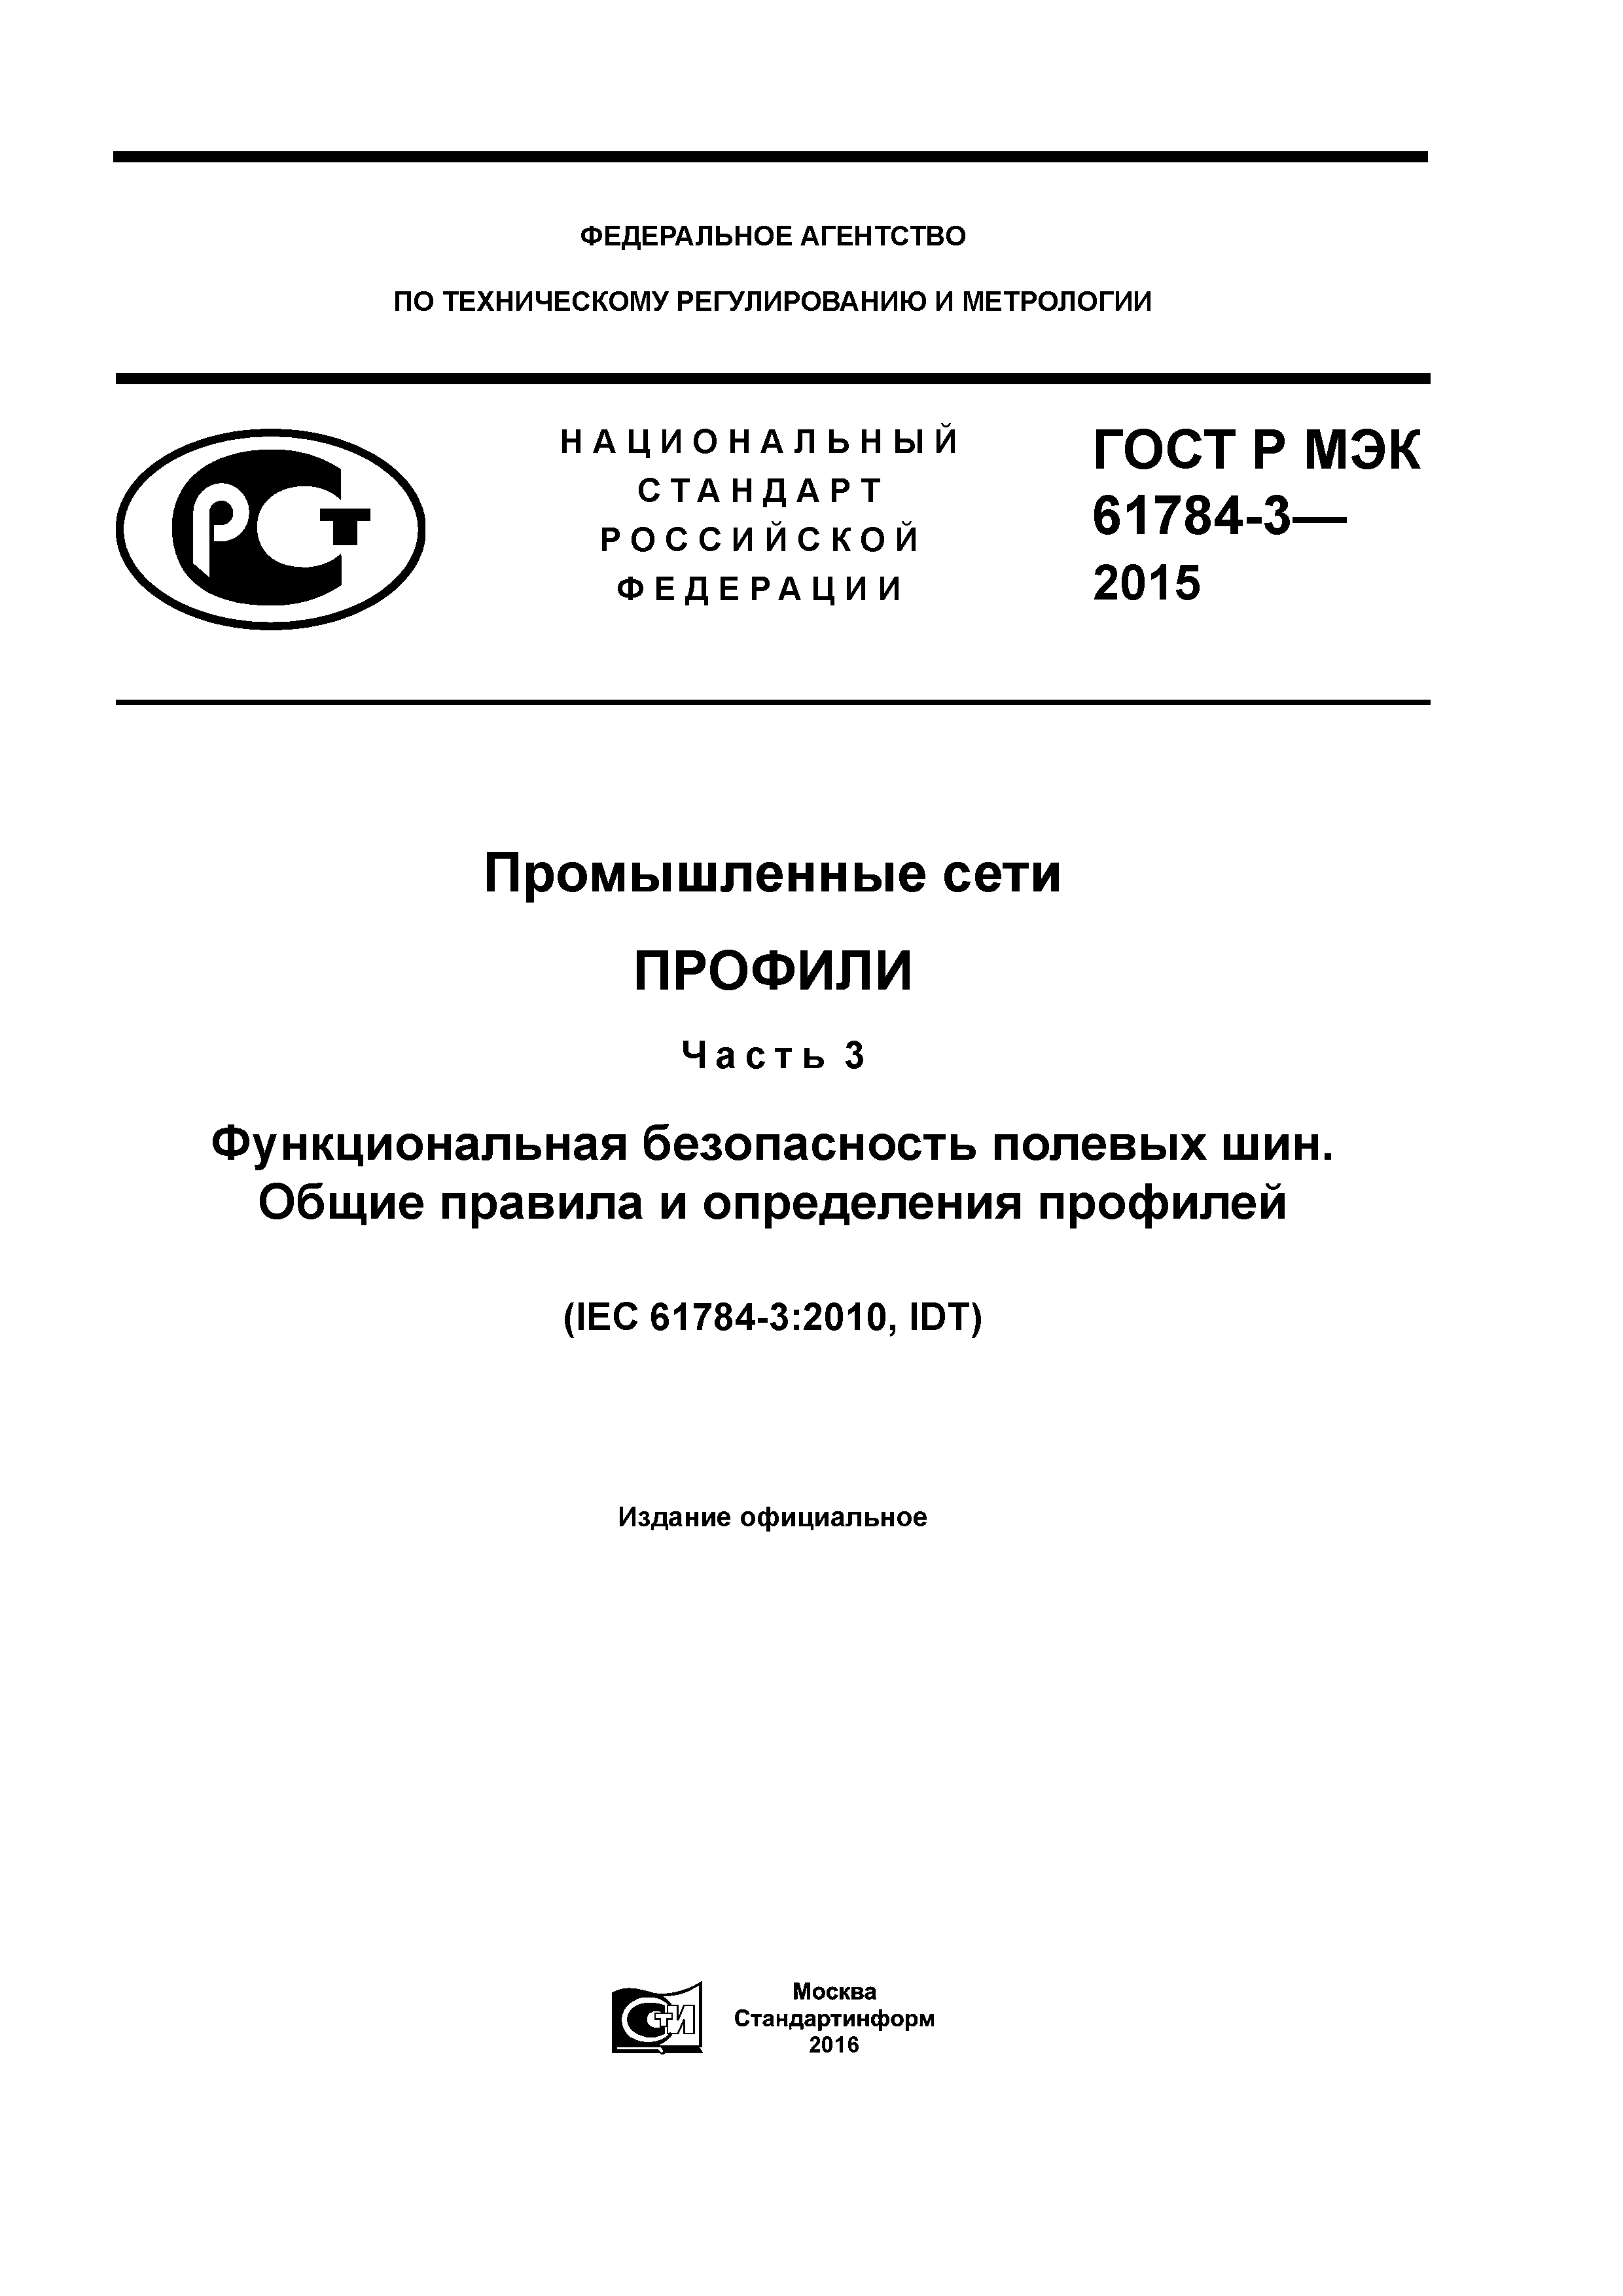 ГОСТ Р МЭК 61784-3-2015